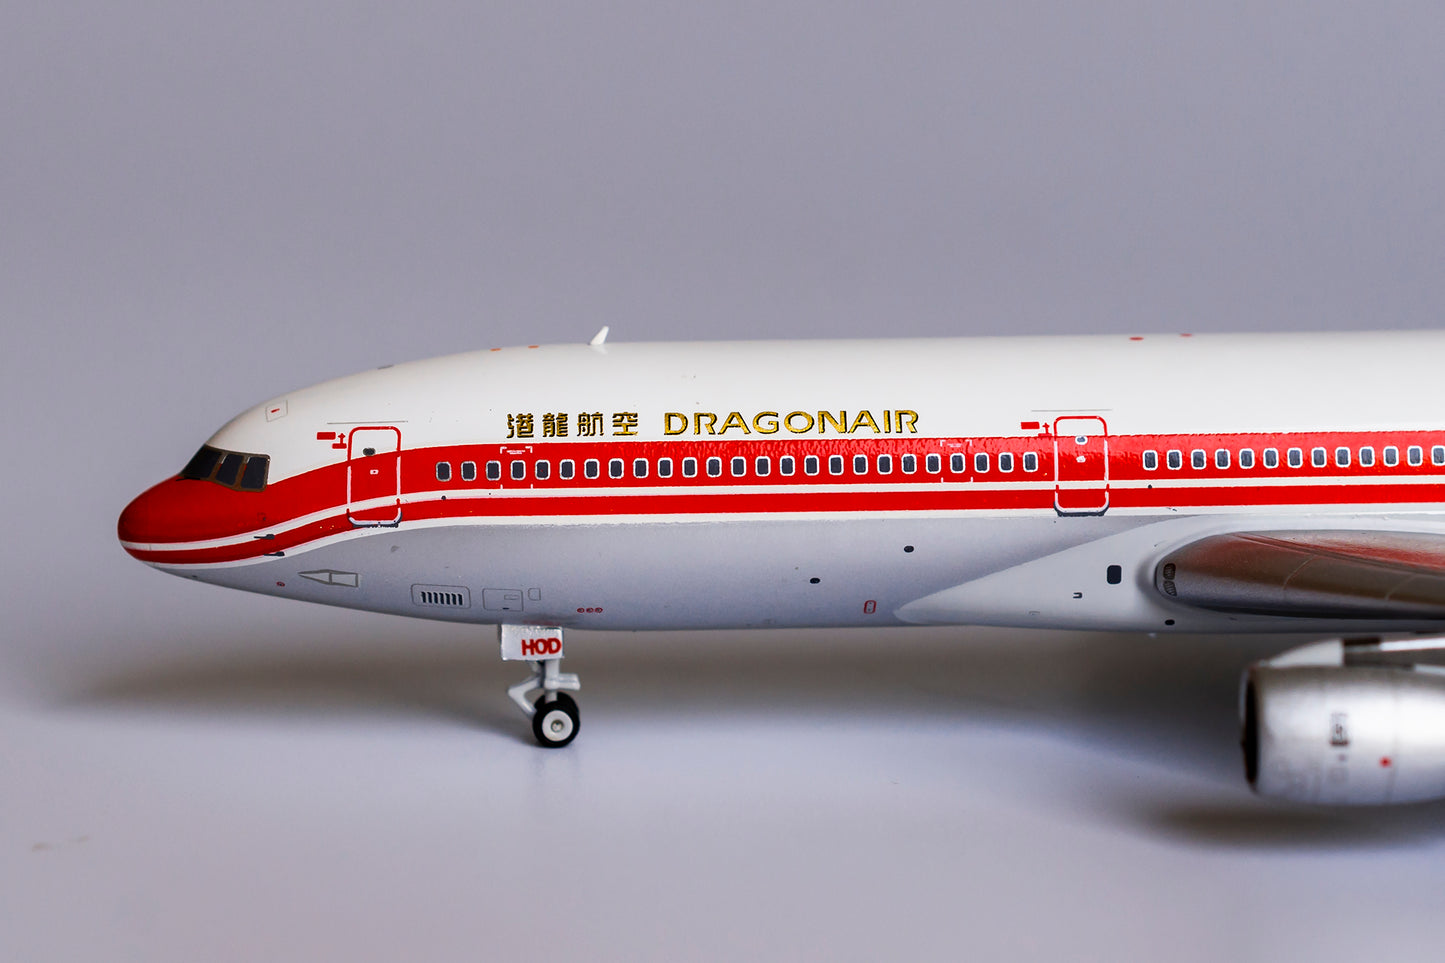 1:400 NG Models Dragonair Lockheed L-1011-1 VR-HOD NG31022